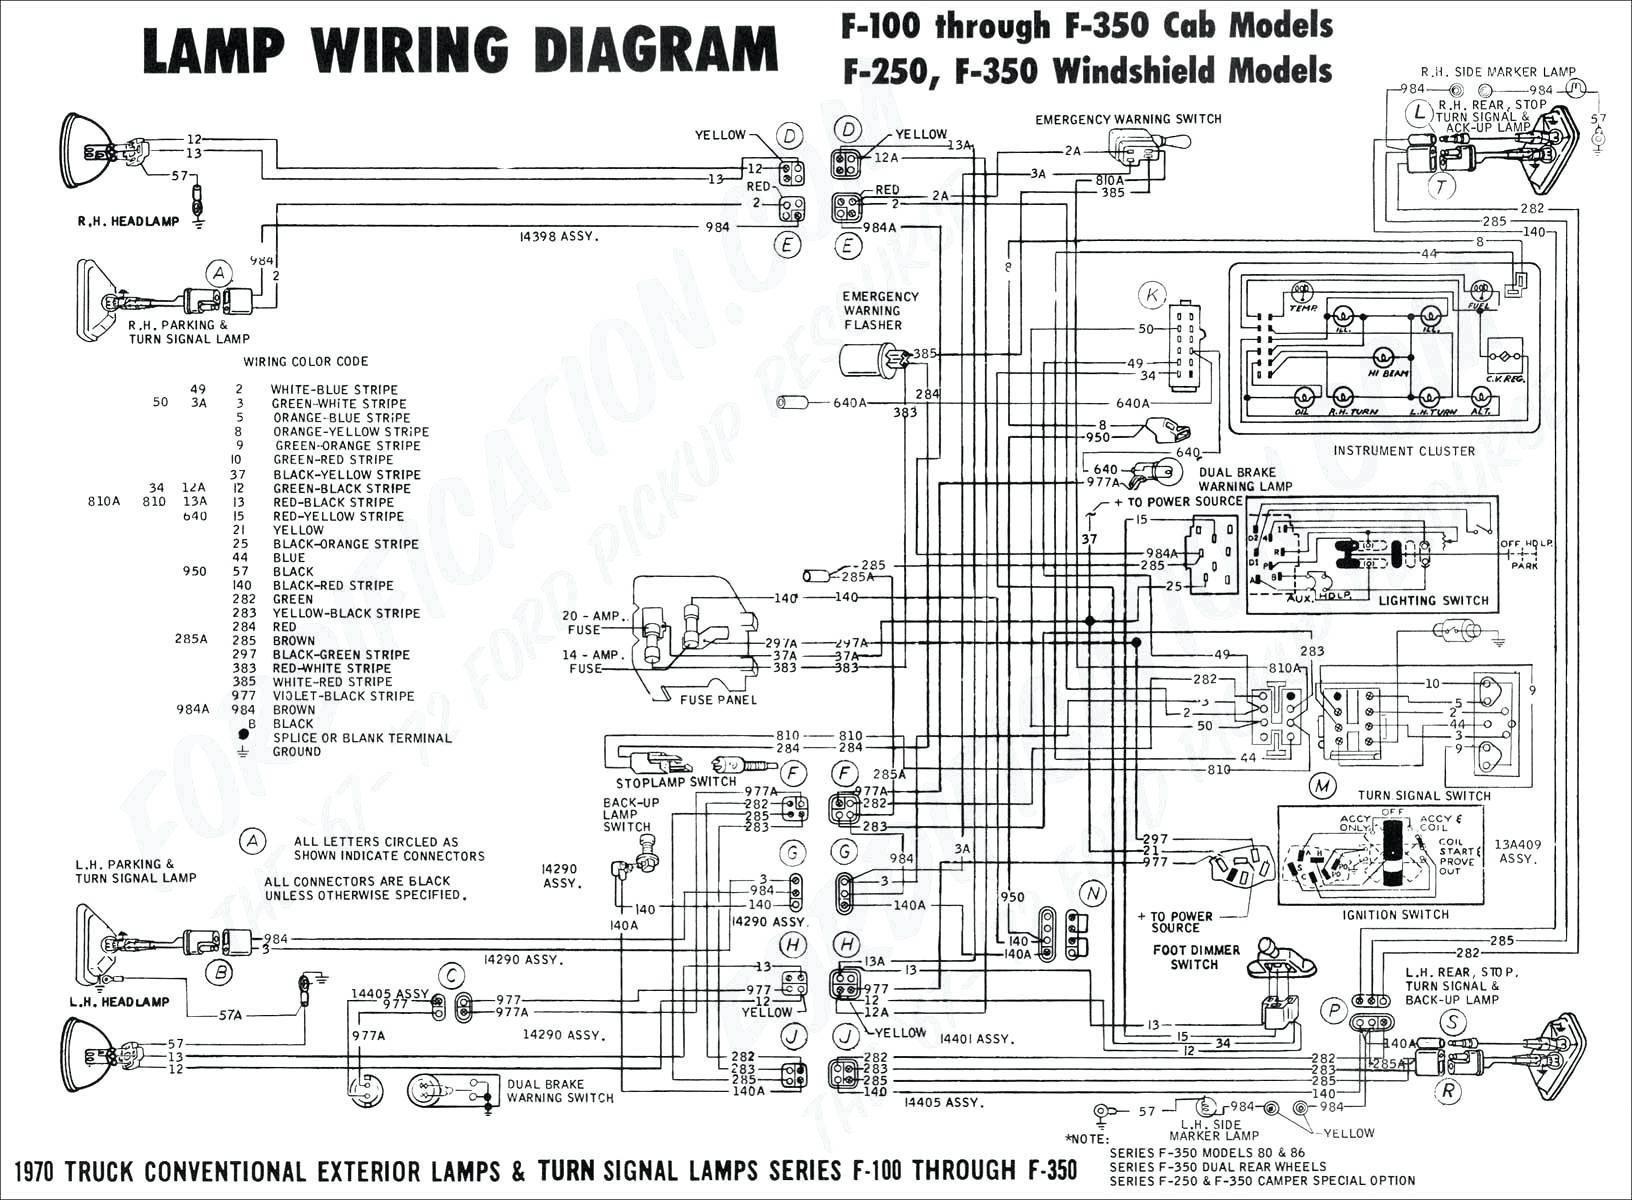 Shore Power Wiring Diagram 2018 Coachmen Wiring Diagrams Lovely Rv Wiring Diagrams Diagram Converter